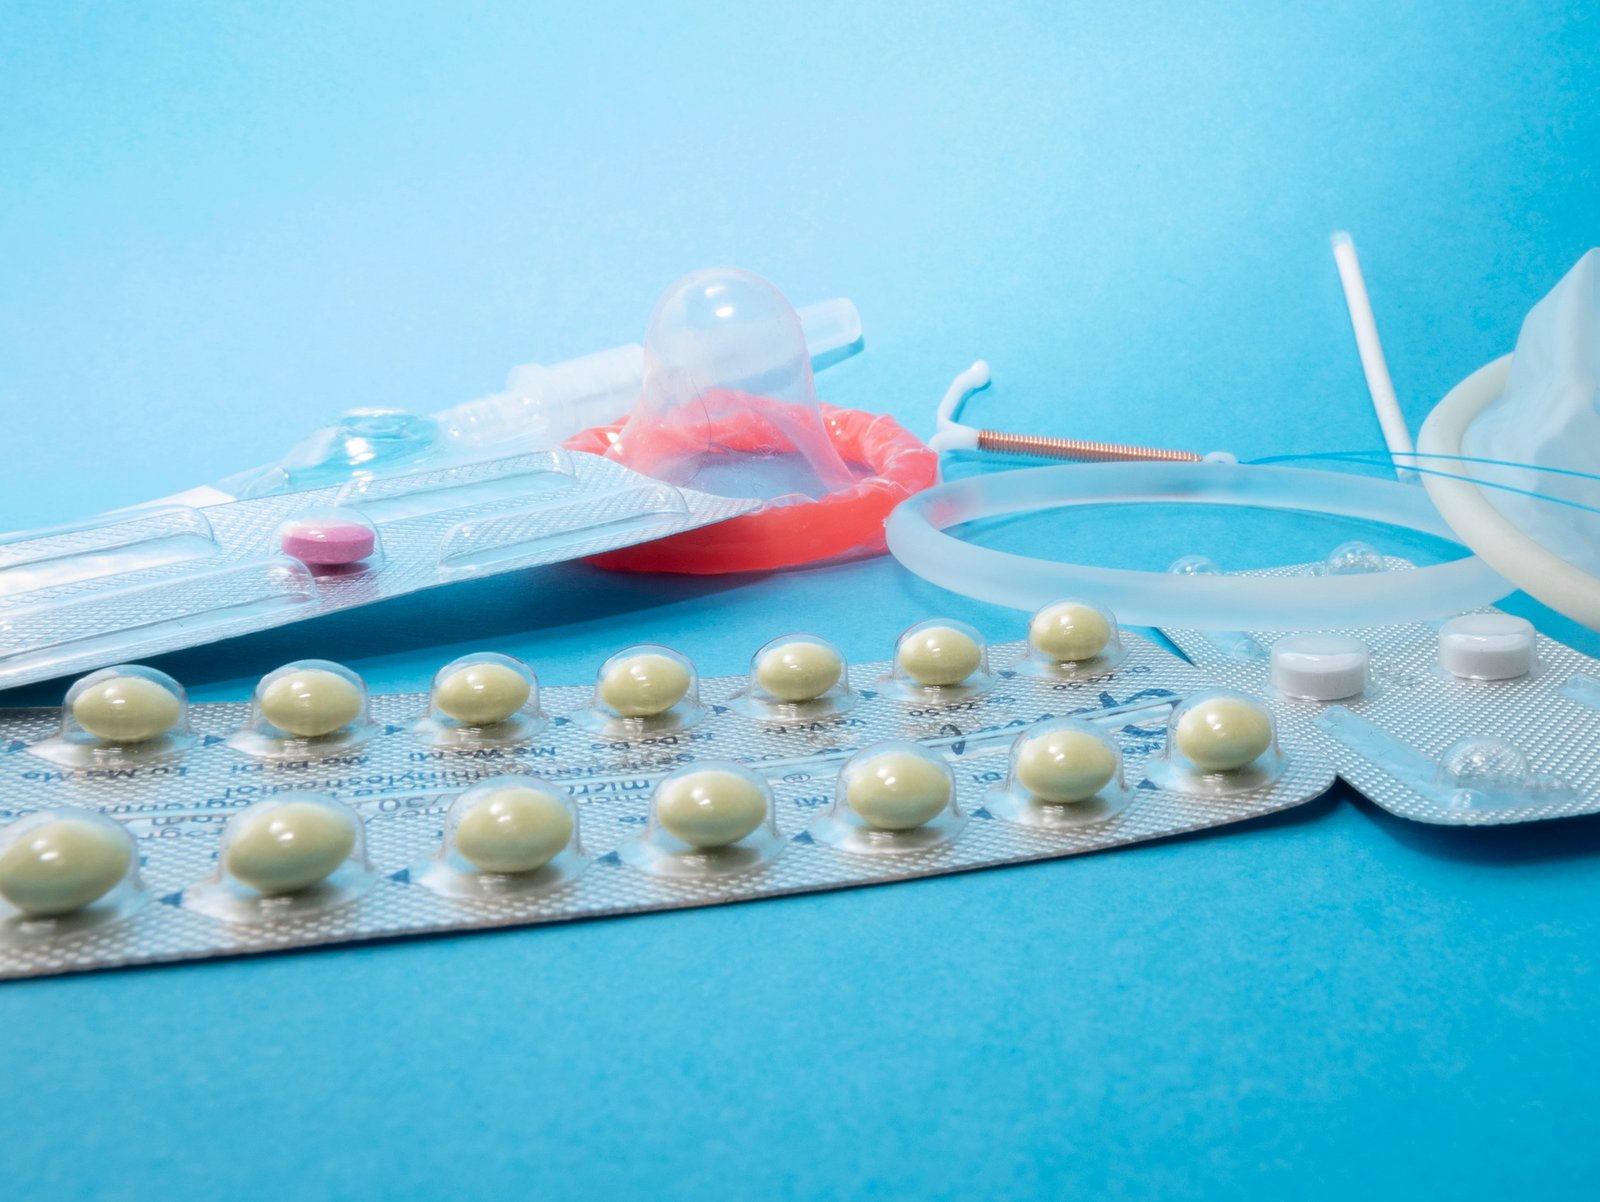 Prezervatīvs, kontracepcijas tabletes un citi kontracepcijas līdzekļi